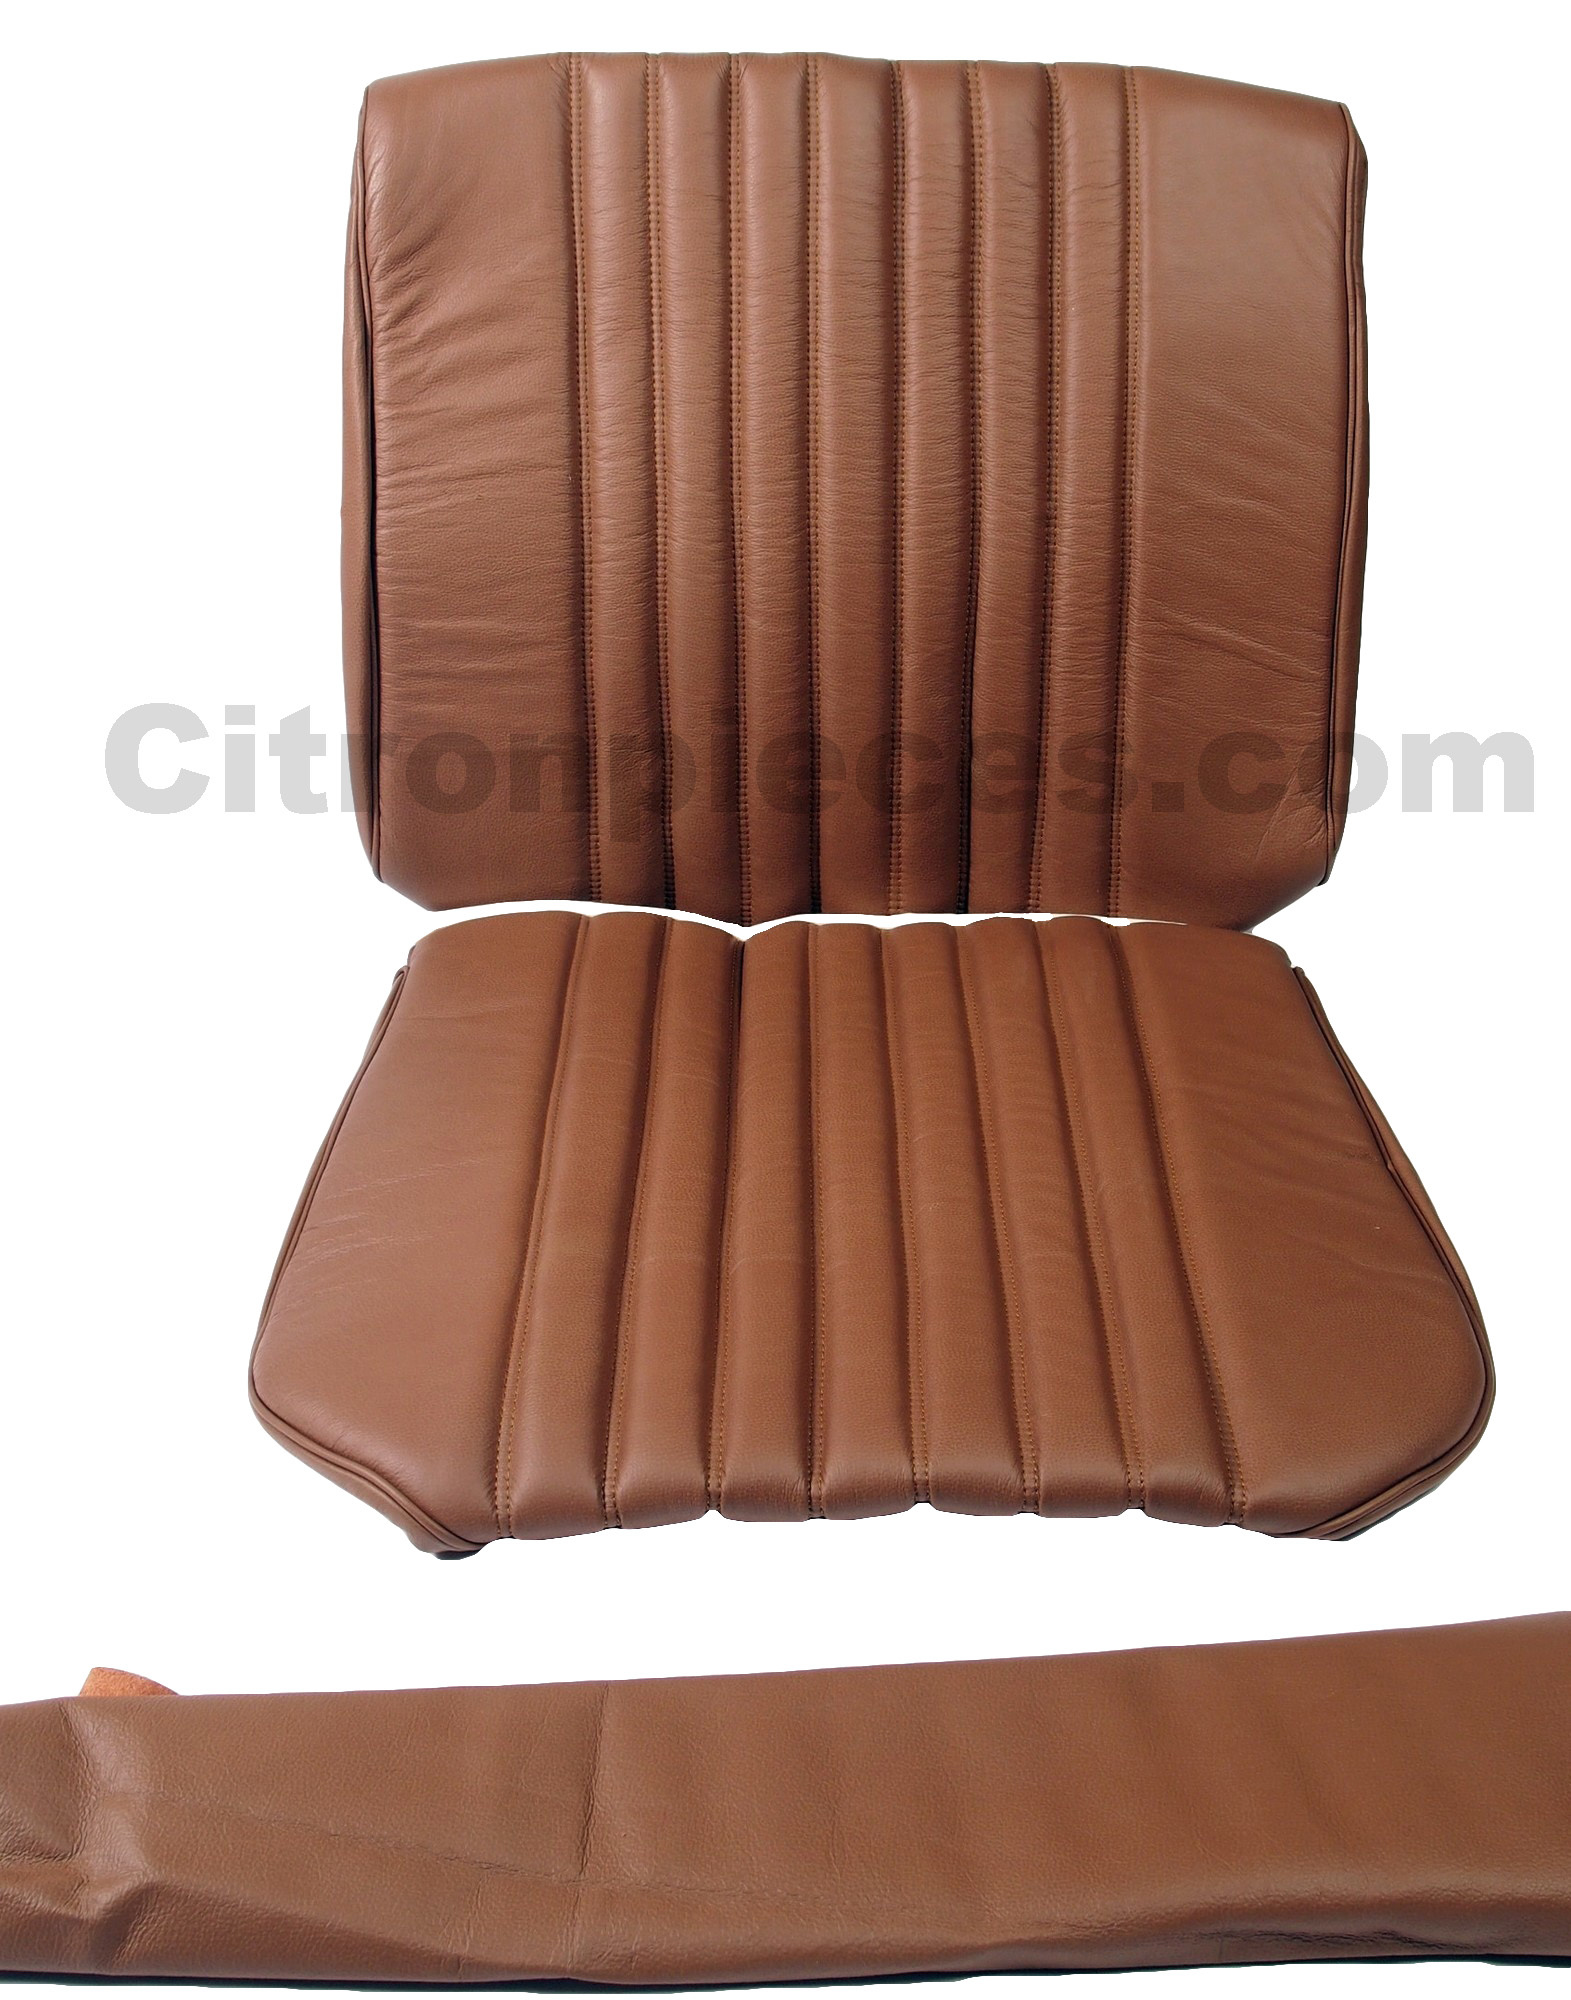 Sitzbezug Vordersitz, links oder rechts passend. Material: Kunstleder braun  (fauve). Passend für Citroen DS, ab Baujahr